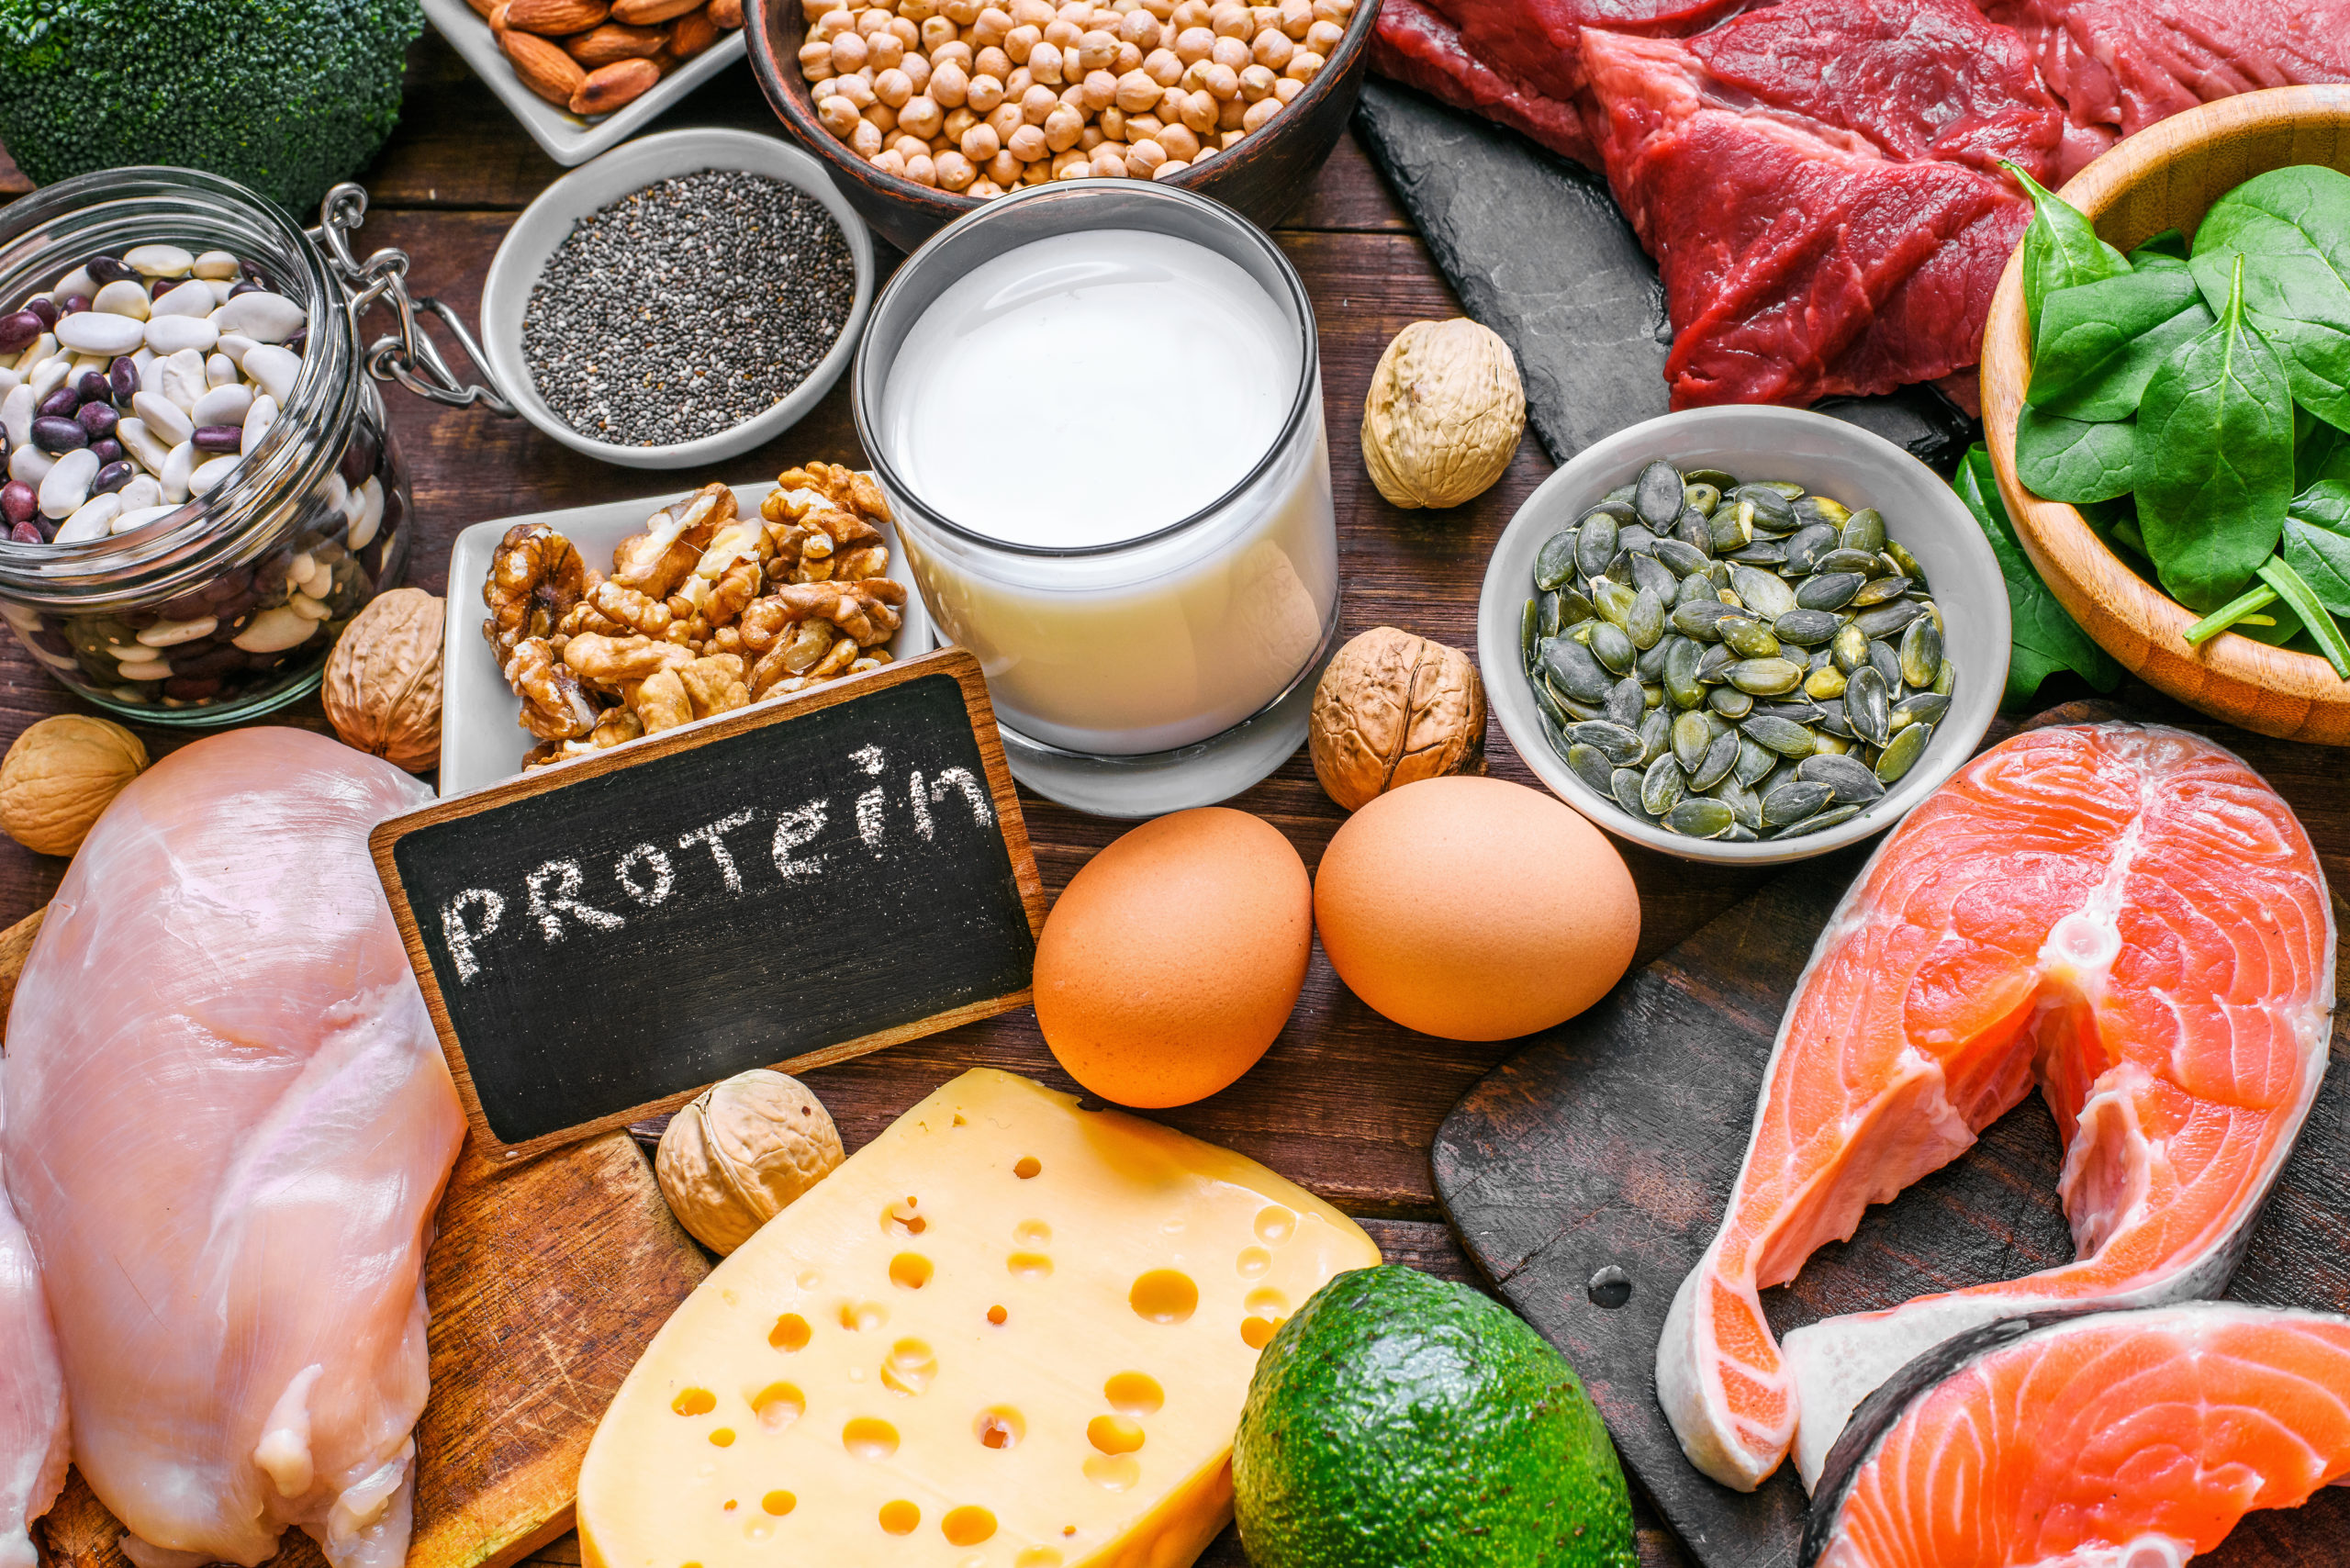 Bild von Lebensmitteln die Protein enthalten